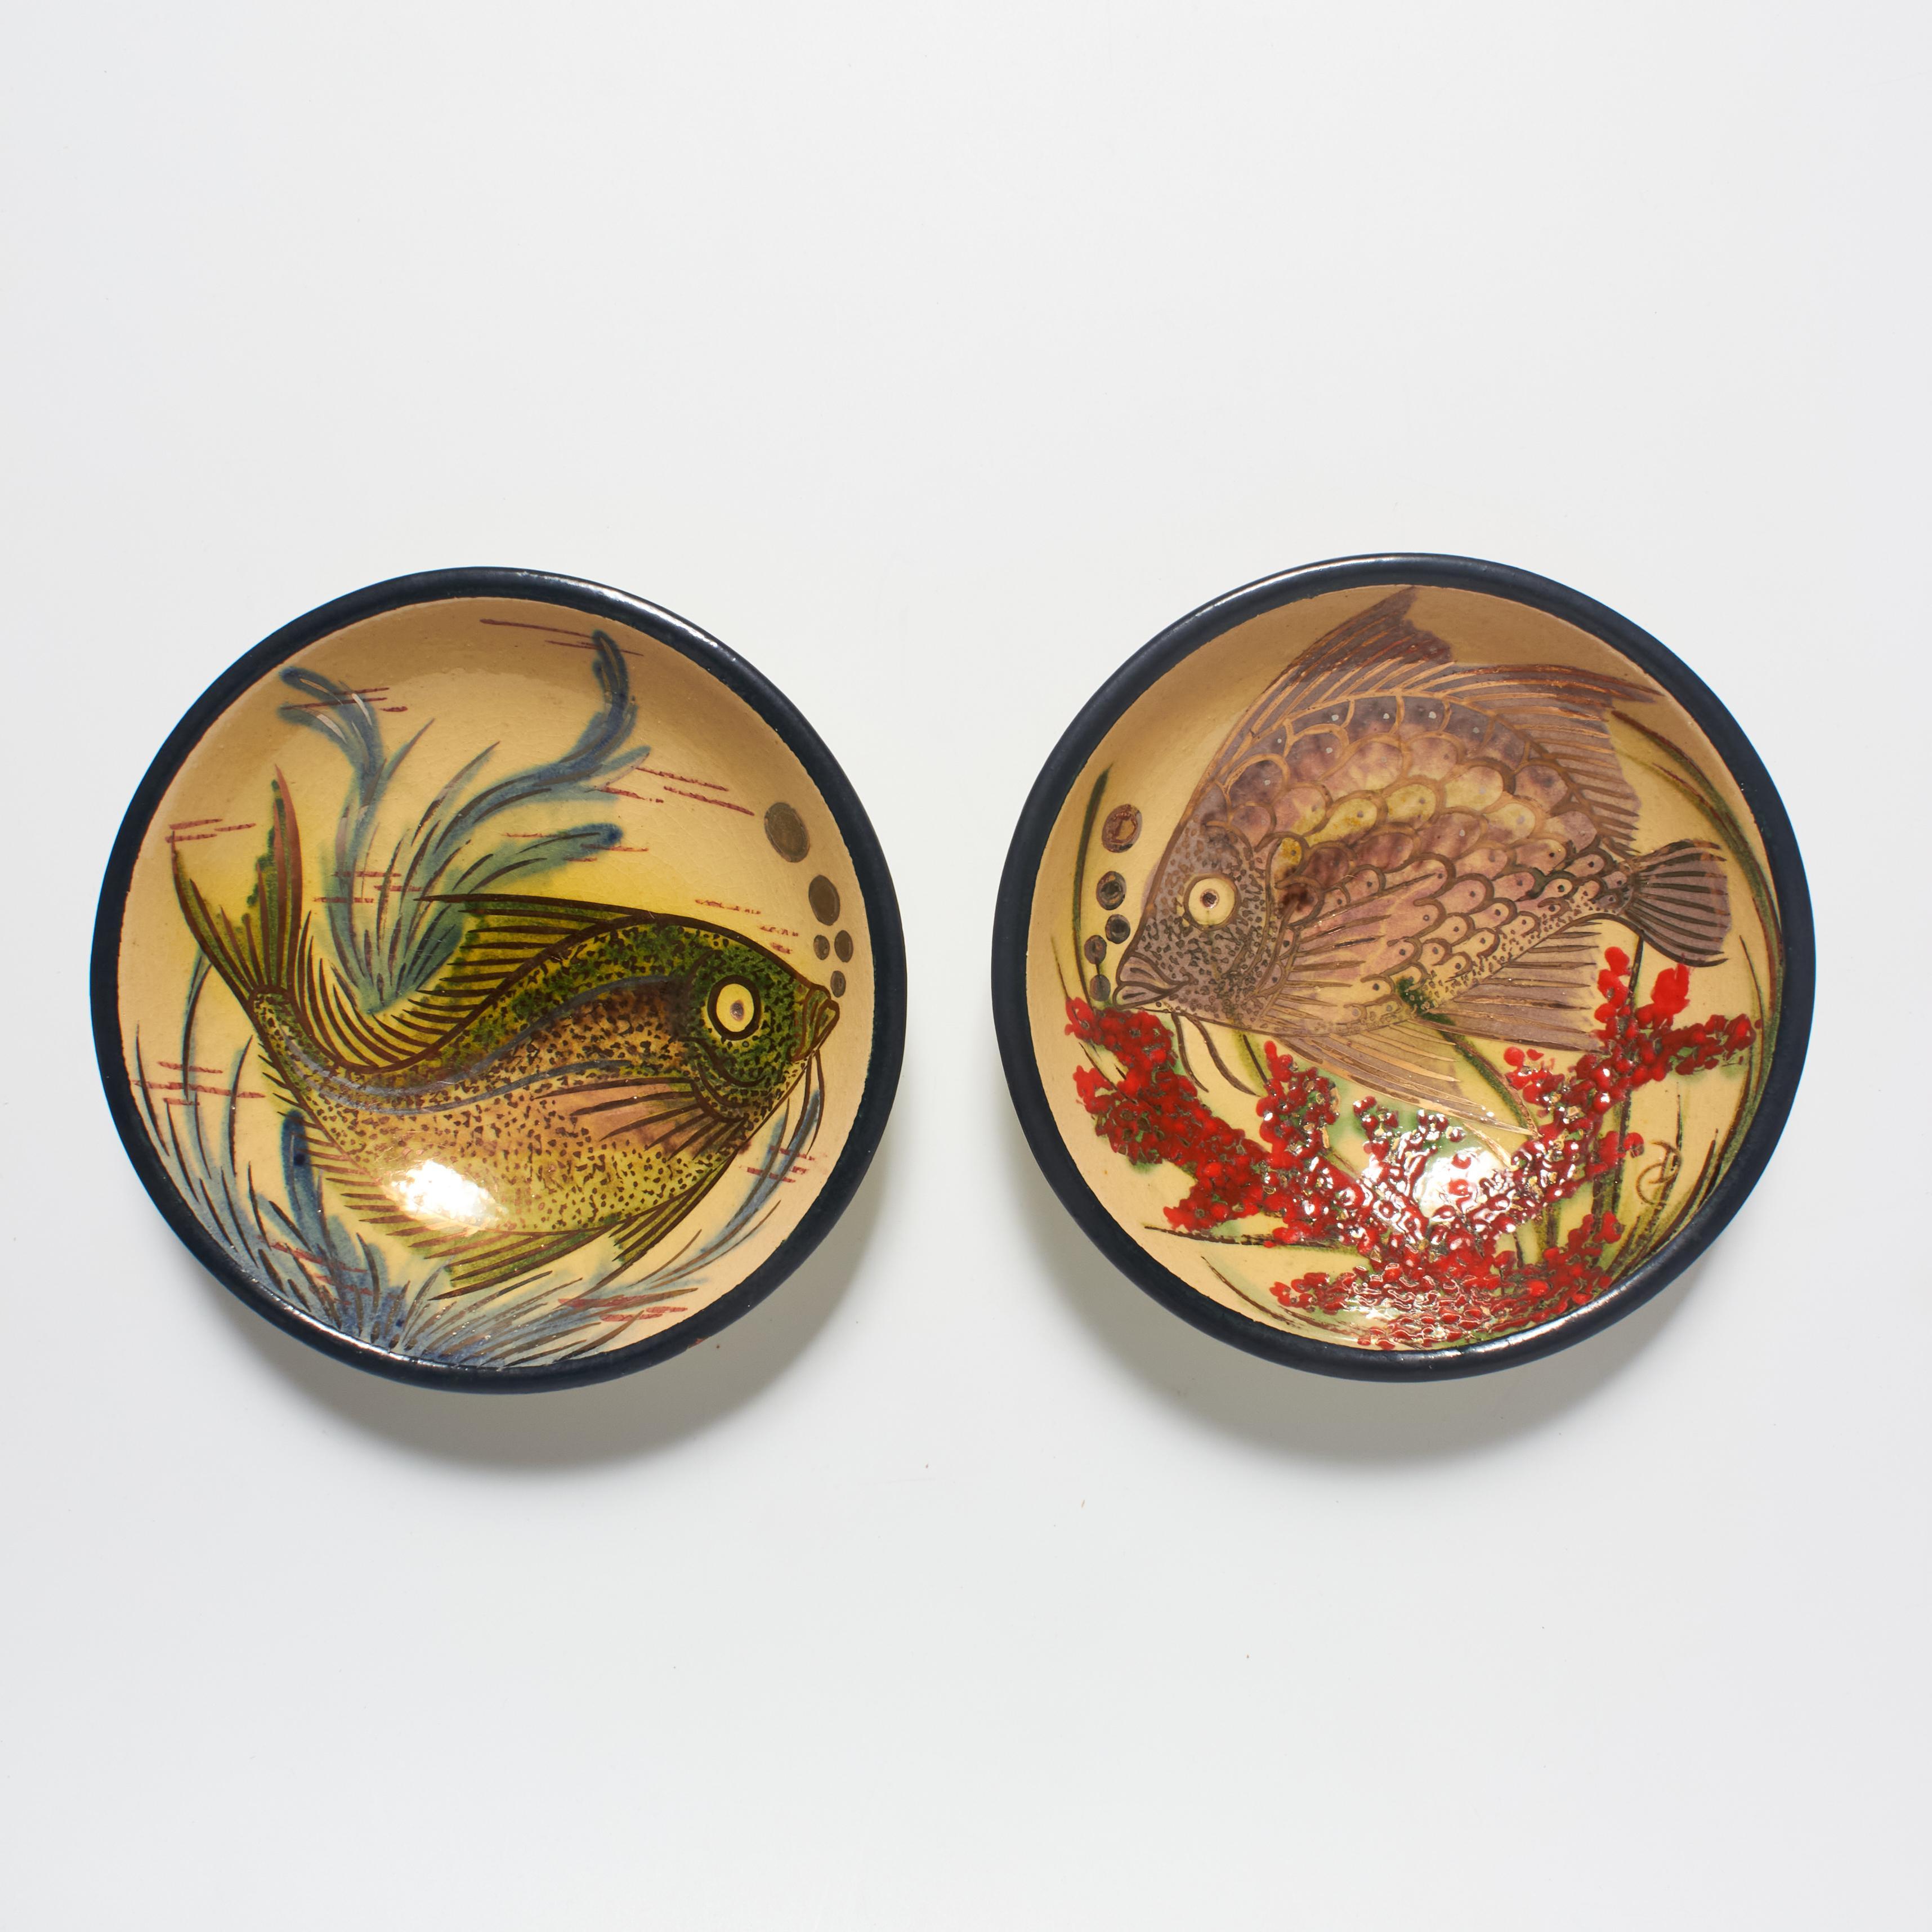 Tauchen Sie ein in die bezaubernde Welt des katalanischen Künstlers Diaz Costa mit unseren beiden handbemalten Vintage-Keramiktellern, die jeweils ein bezauberndes Fischmotiv zeigen. Diese mit künstlerischer Finesse gefertigten Teller zeigen Diaz